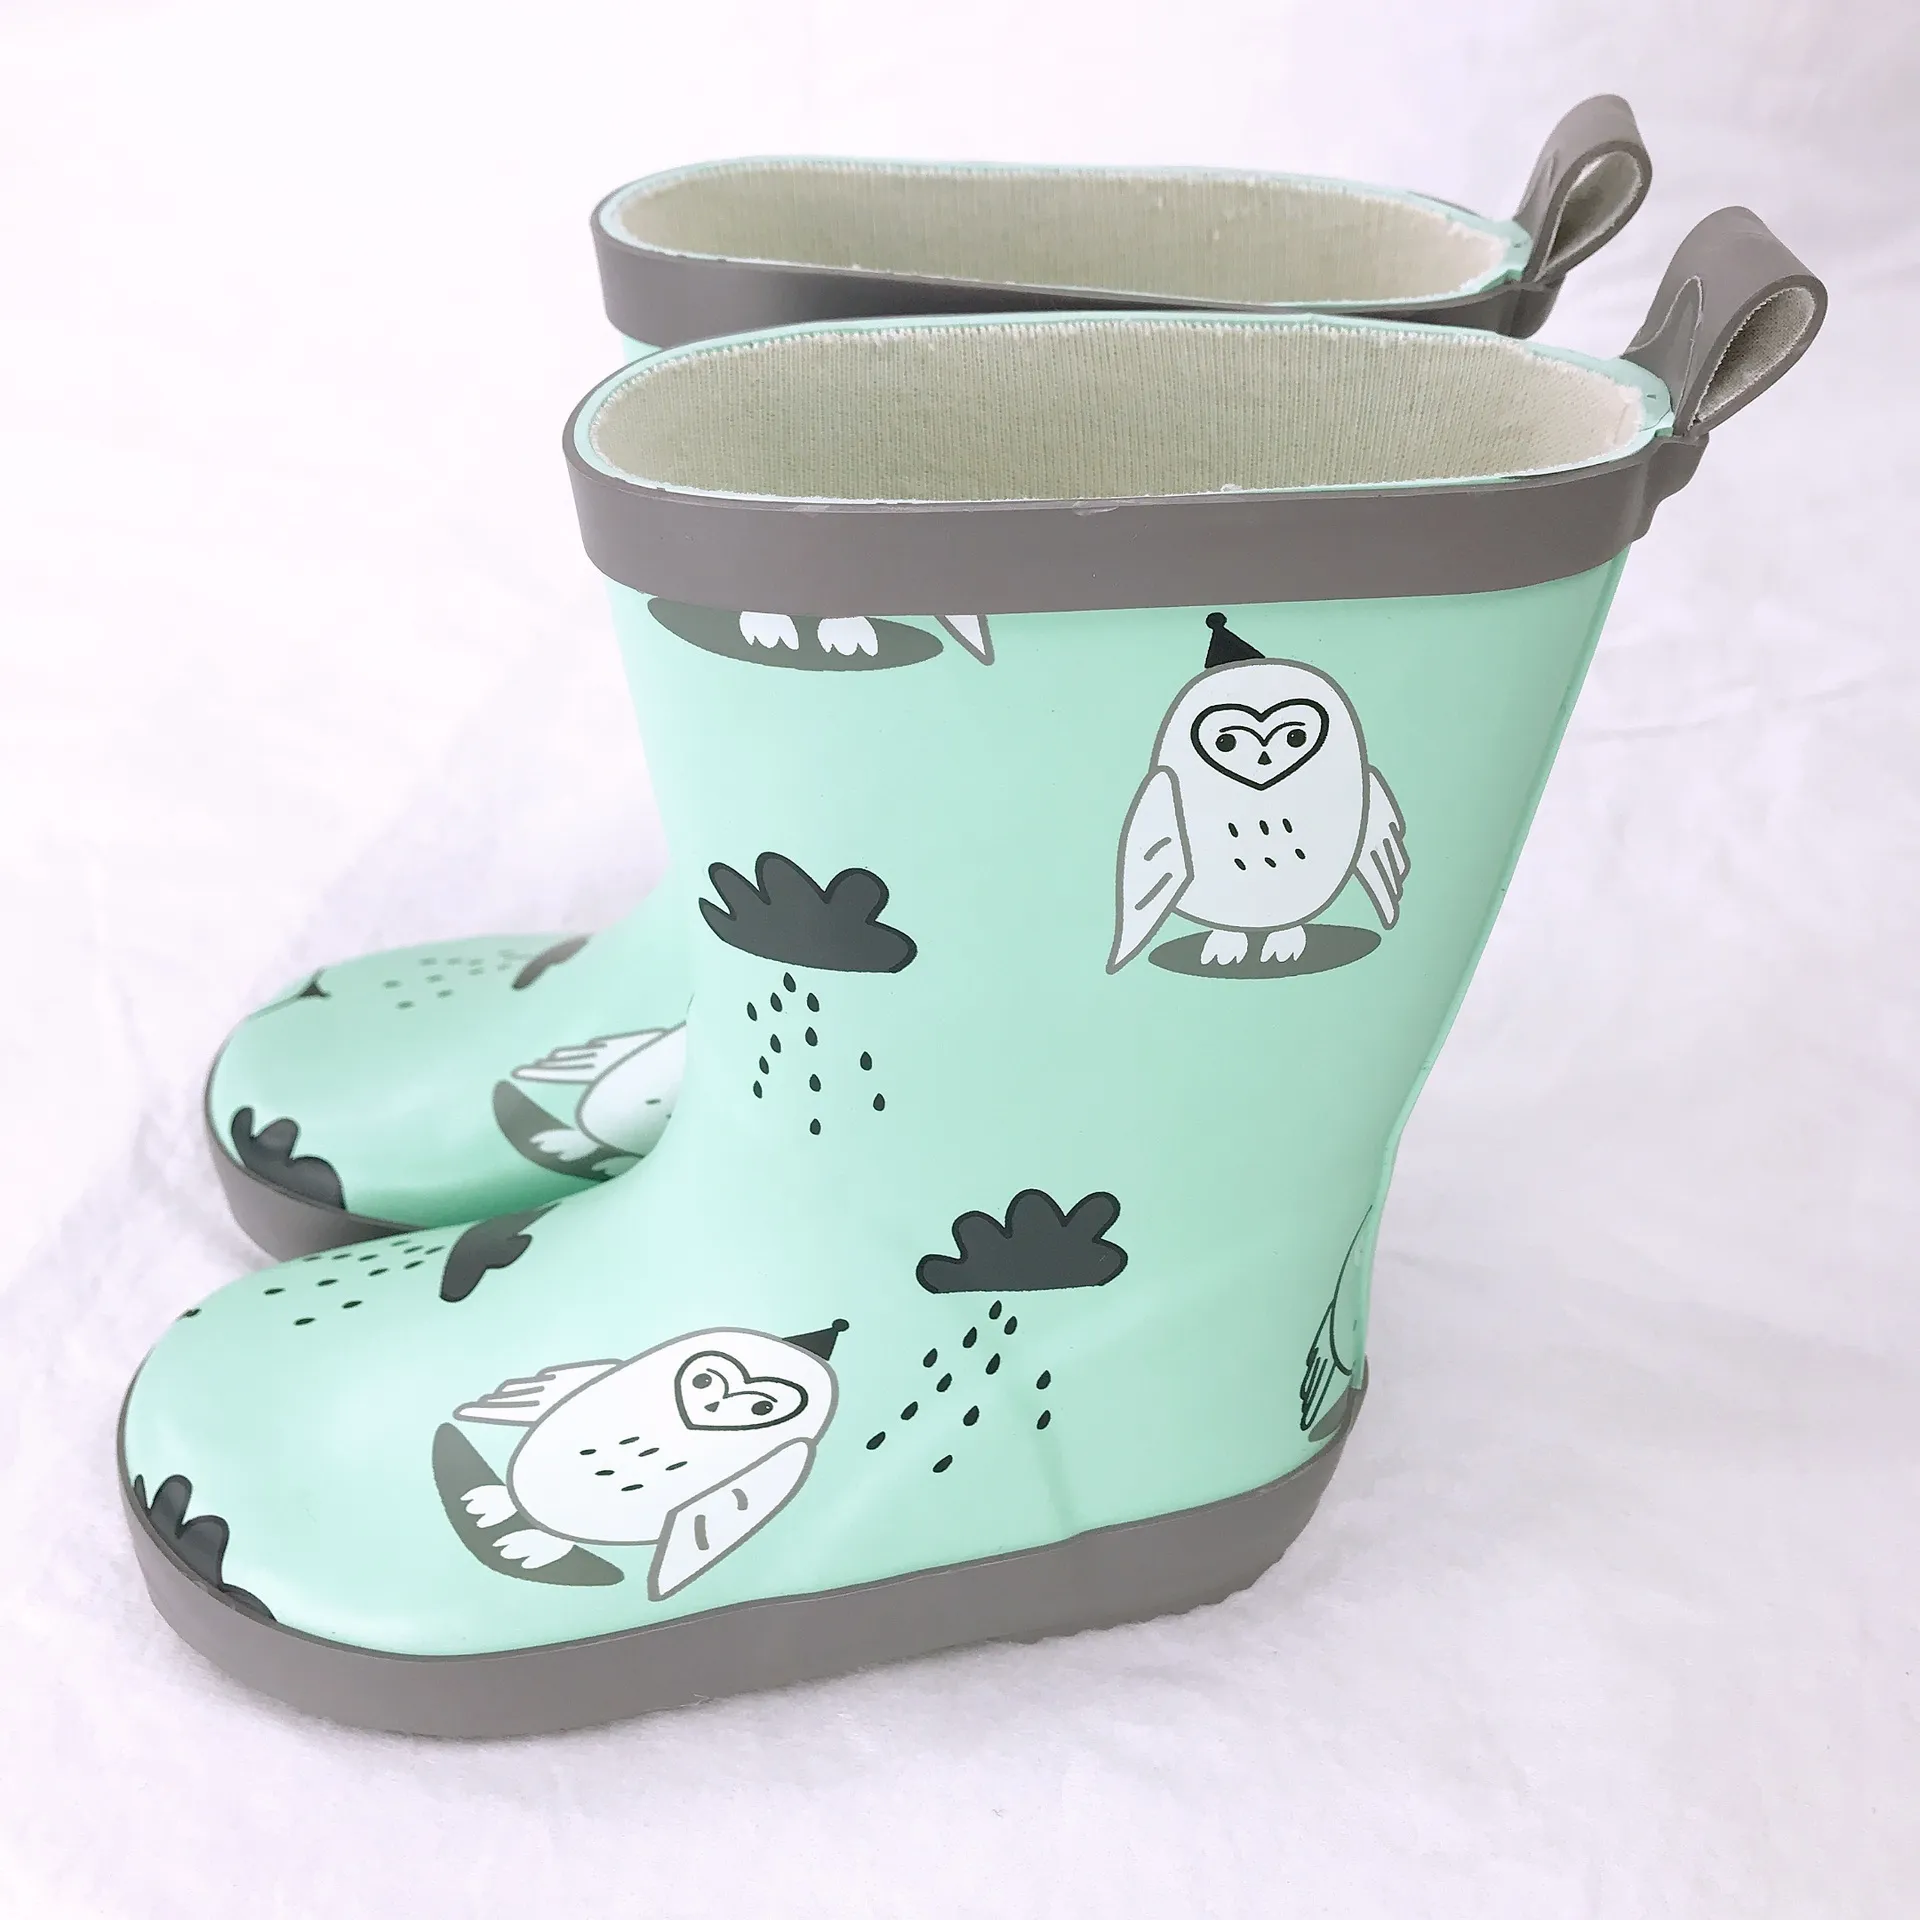 Filles bottes de pluie en caoutchouc de caoutchouc girls imprimés bottes en caoutchouc pour enfants imperméables chaussures de pluie douce de bébé chaussures d'eau taille 23-32